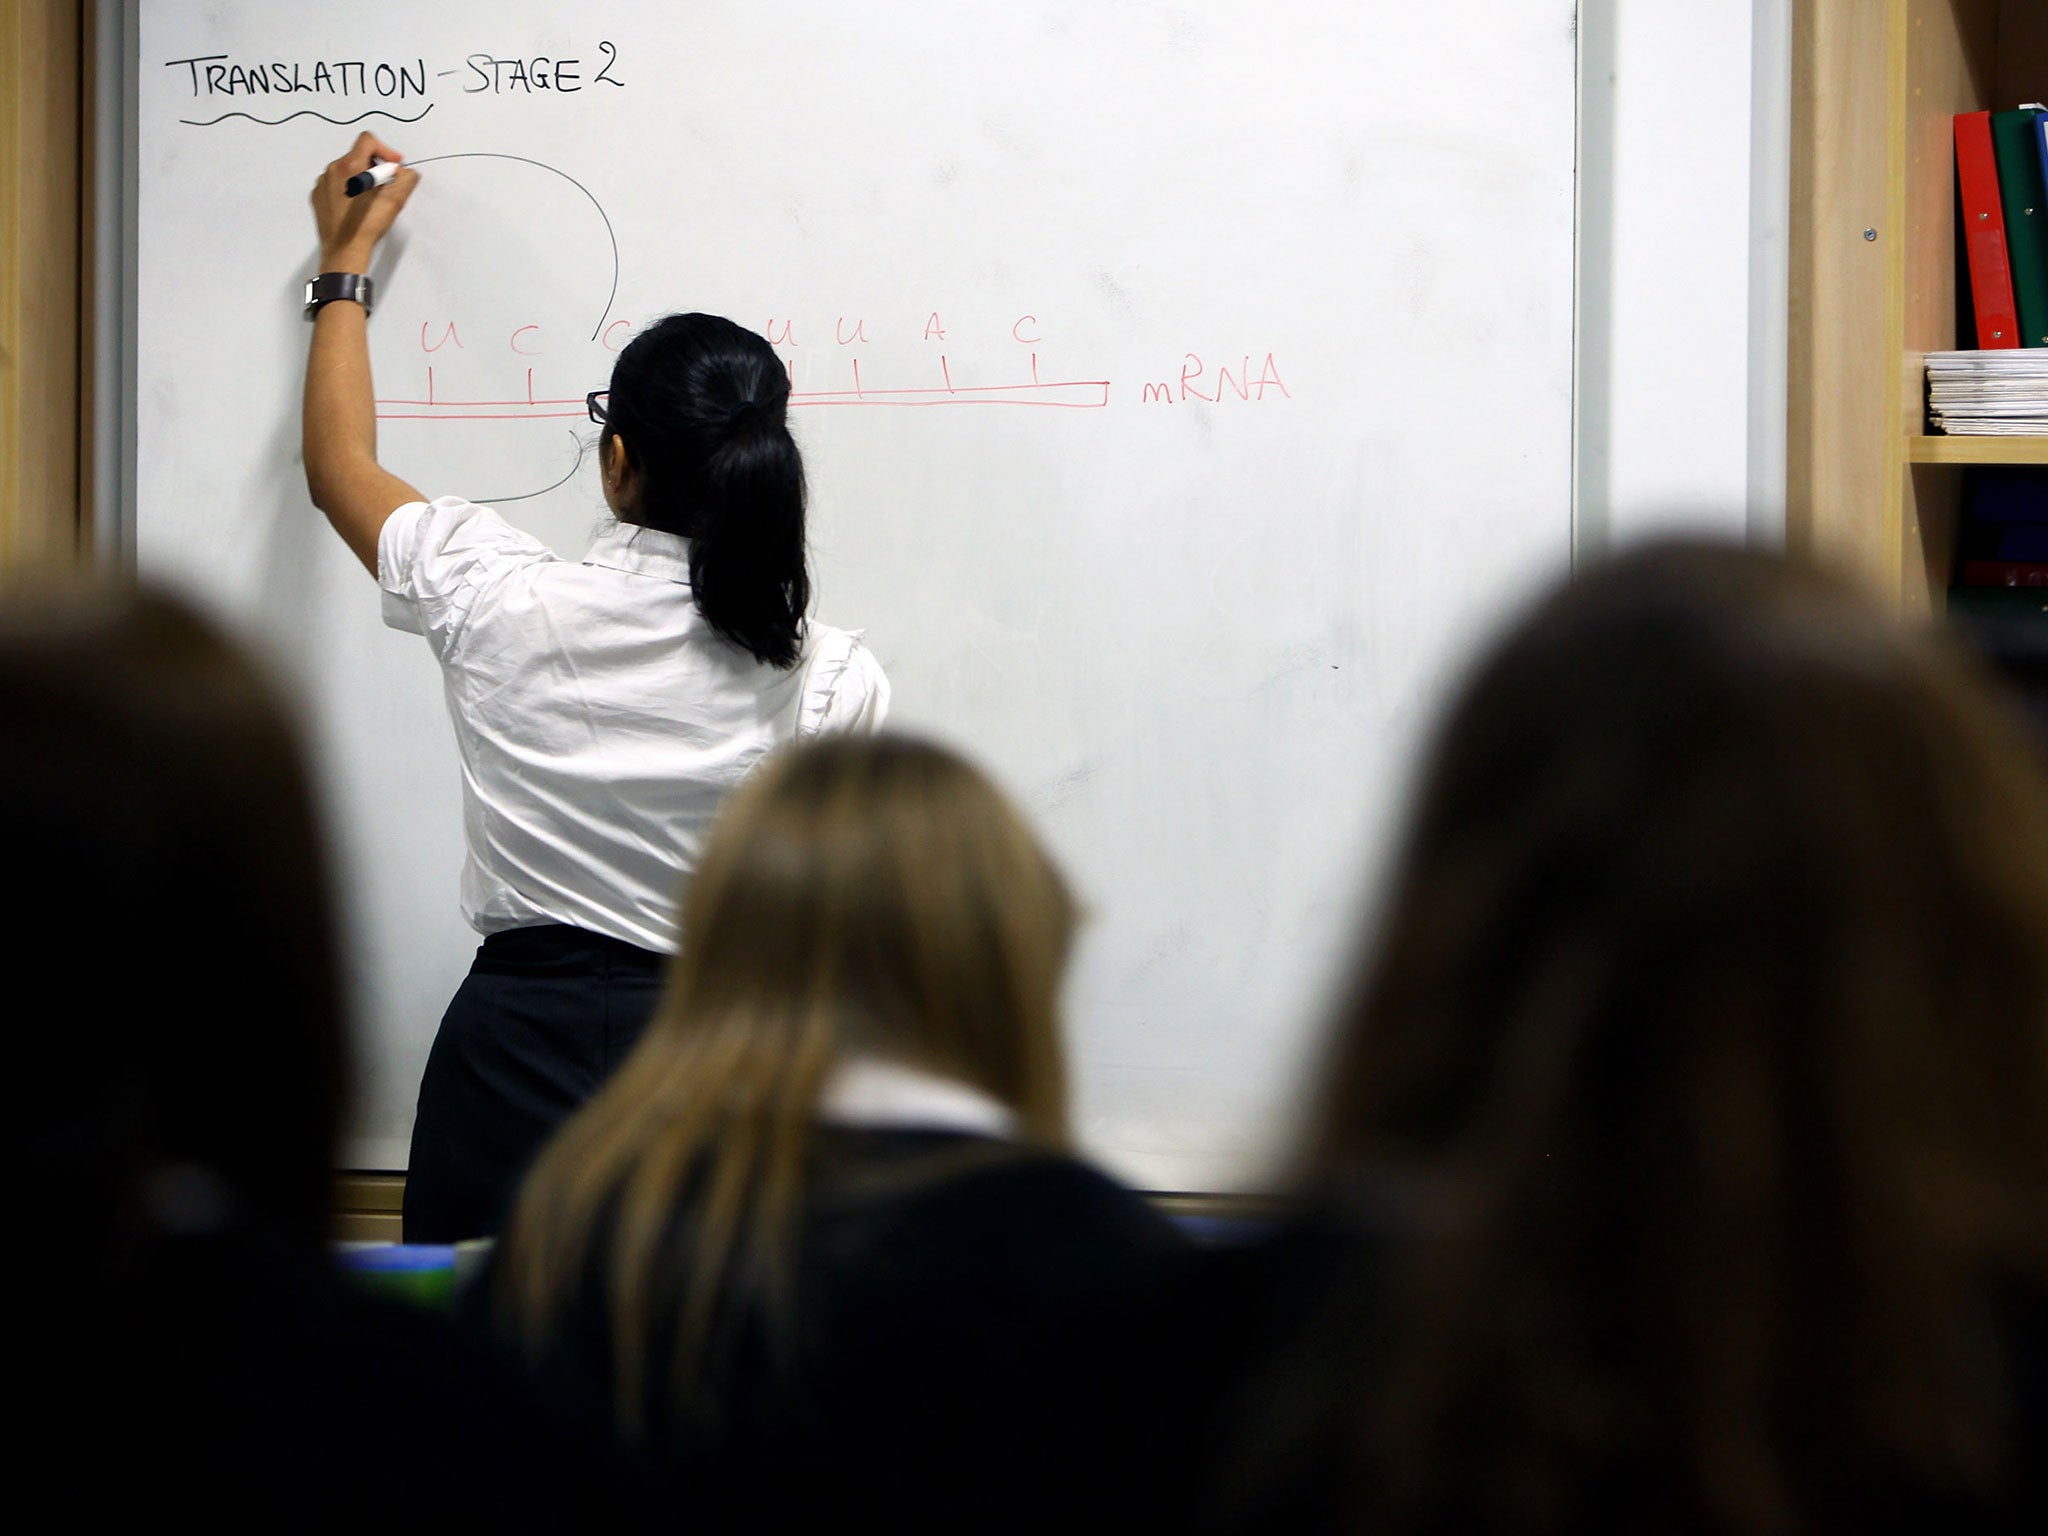 The teacher shortage has been described as a “national crisis”